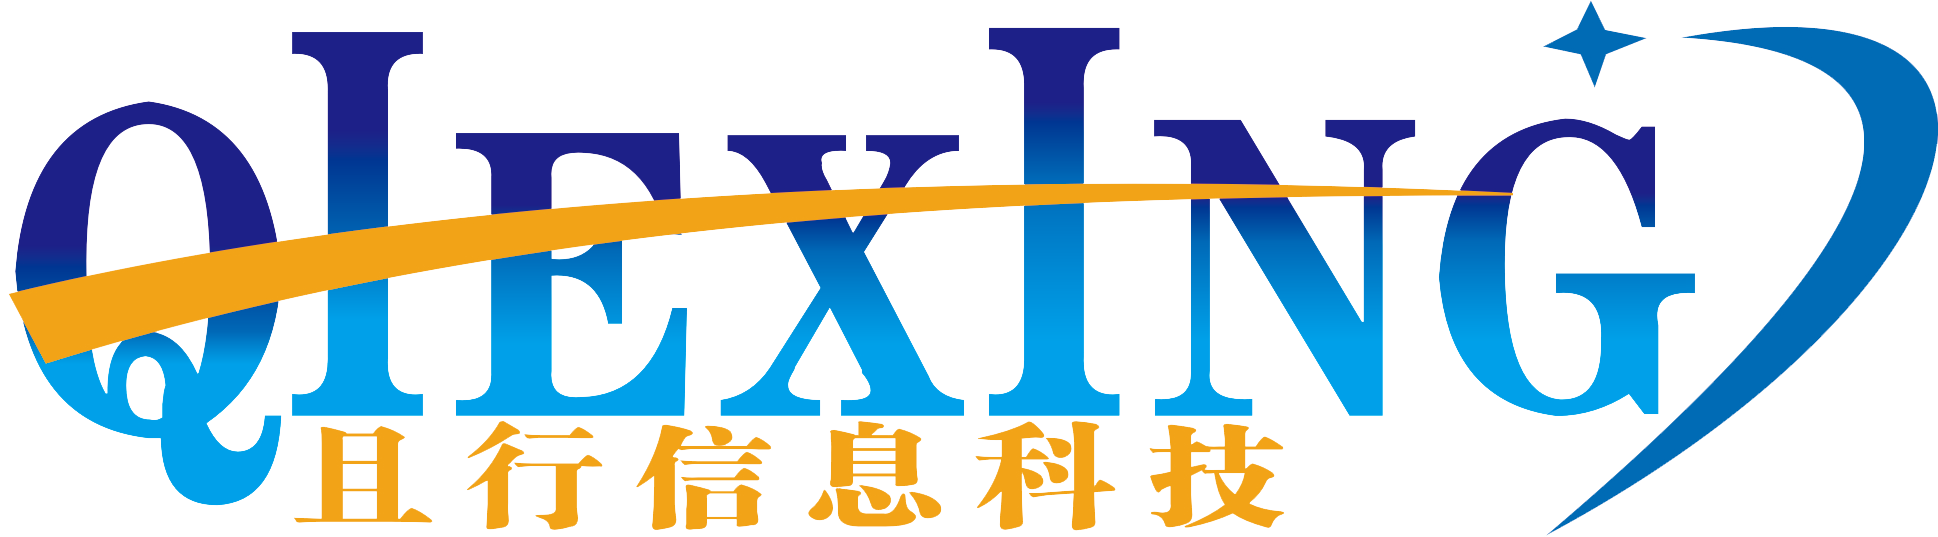 南京且行信息科技有限公司-官方网站